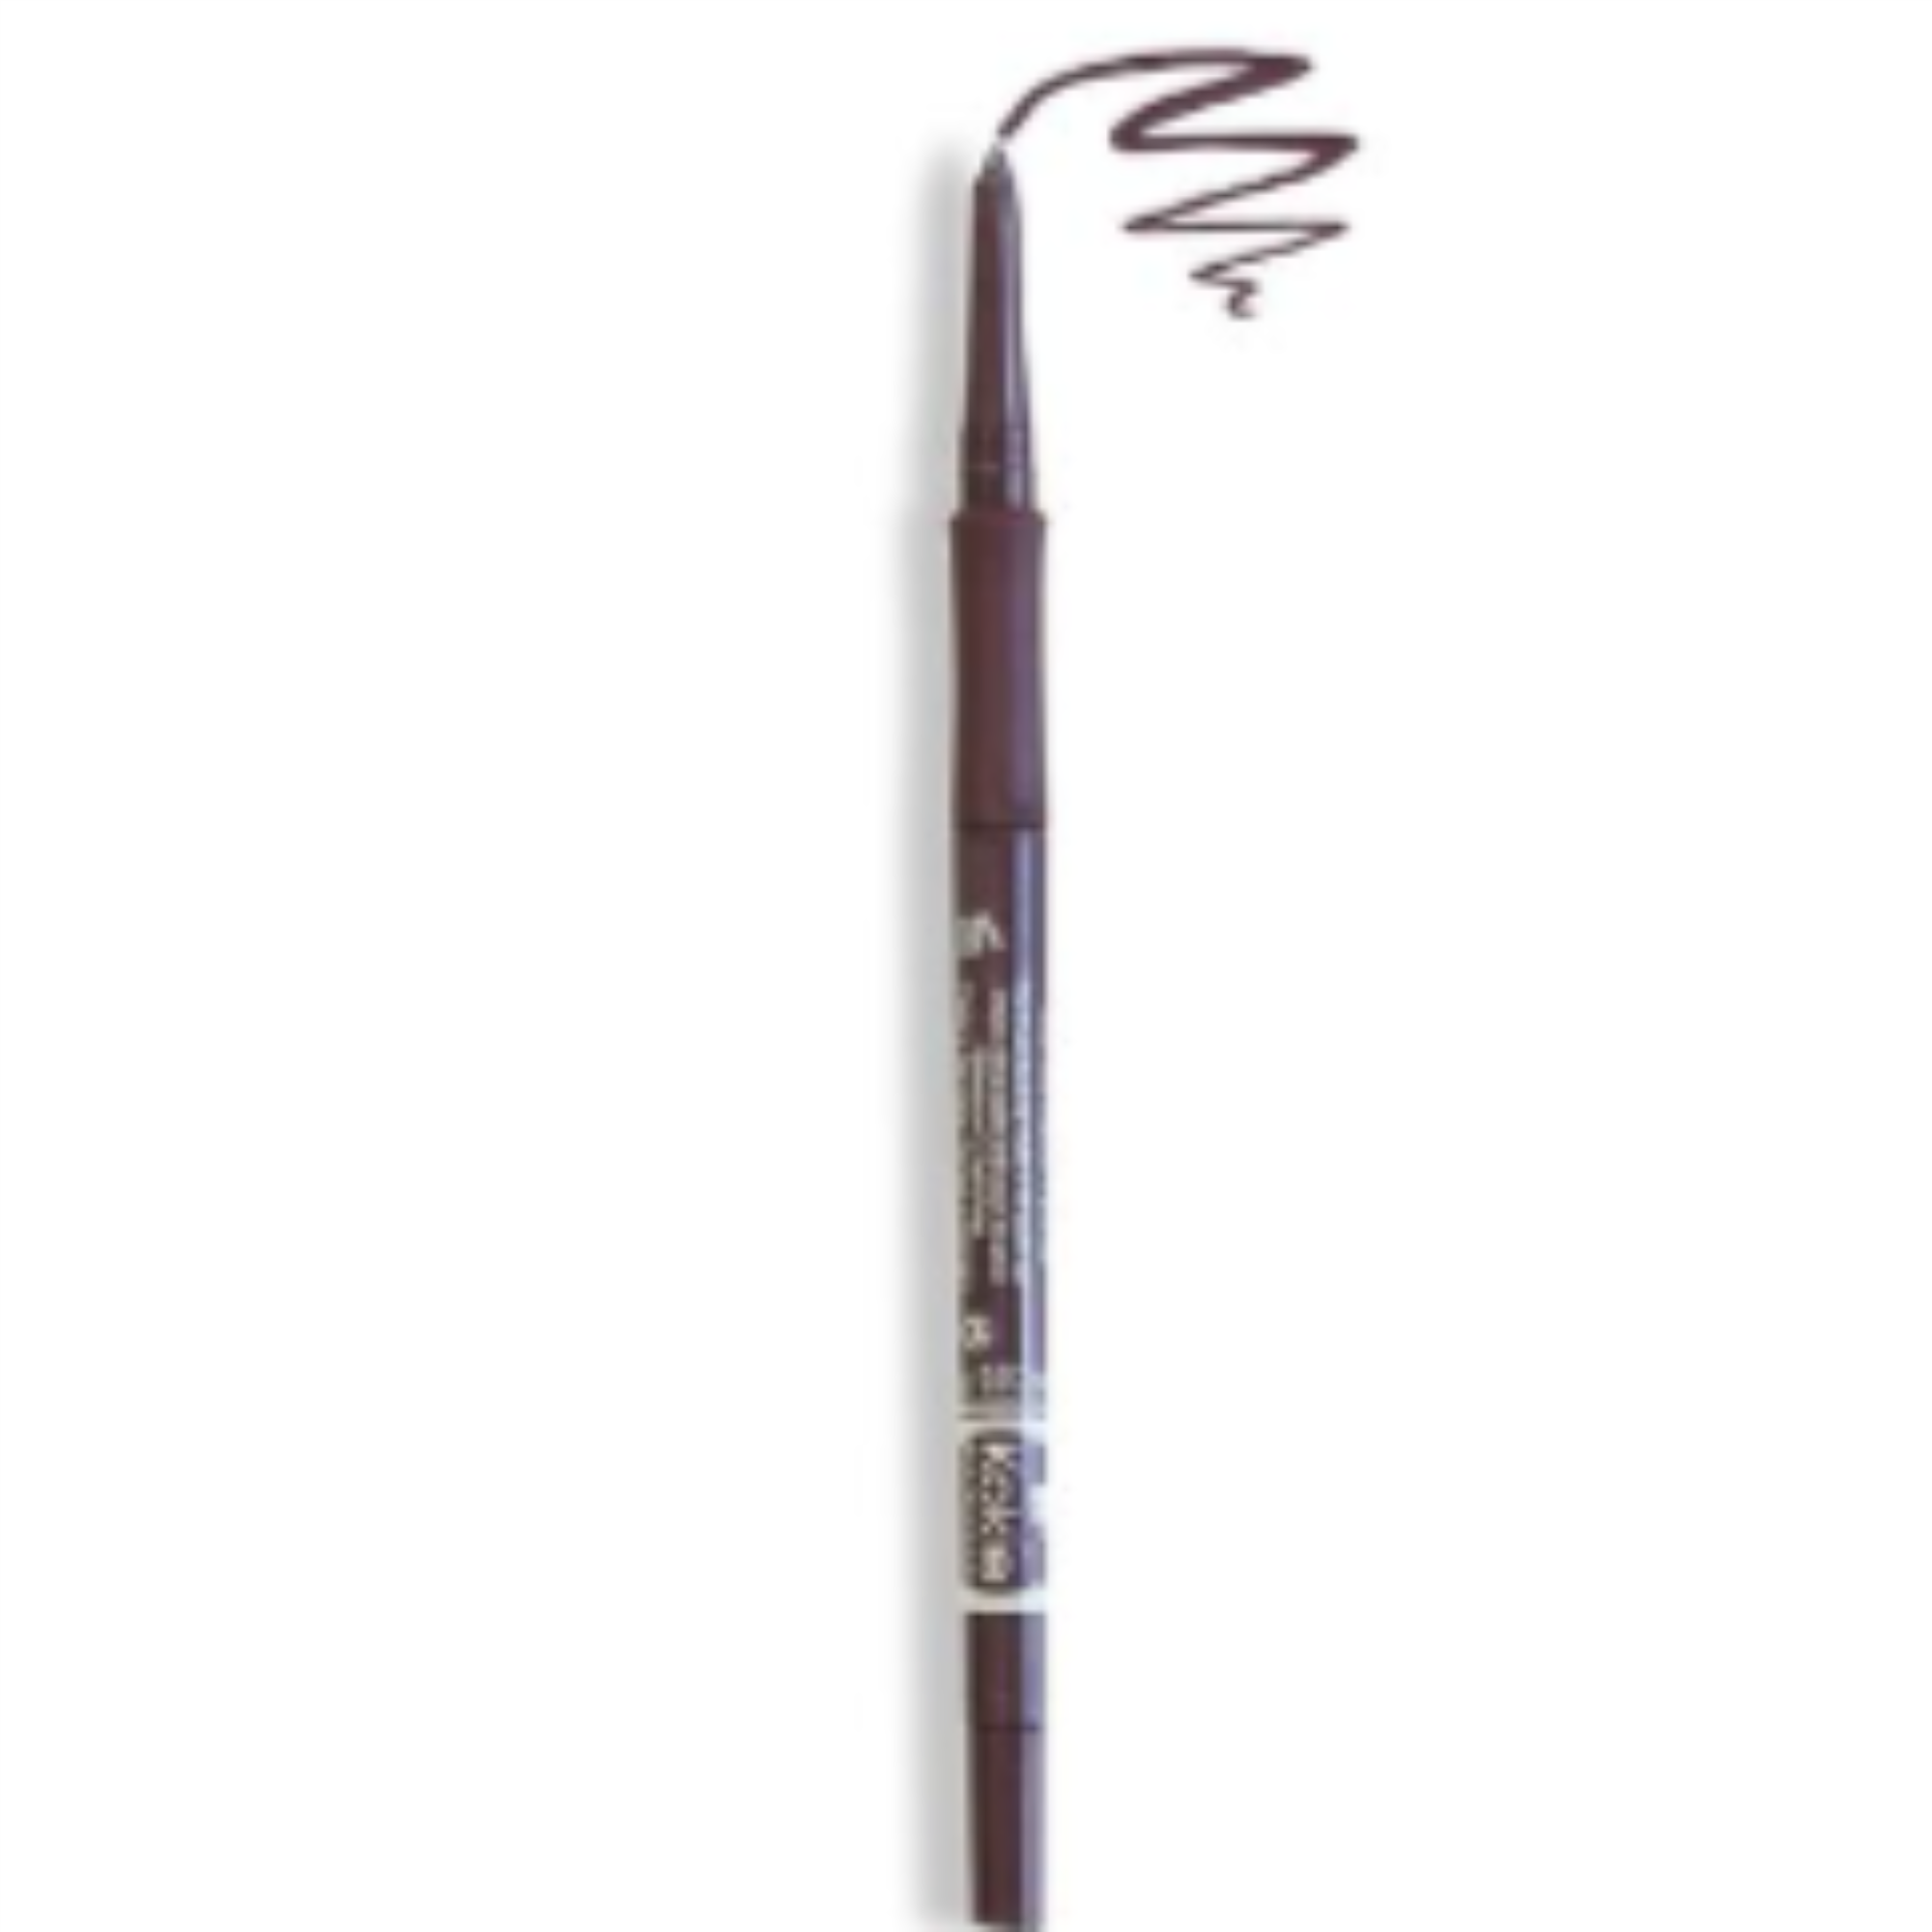 Kokie Cosmetics Retractable Eyeliner Pencil